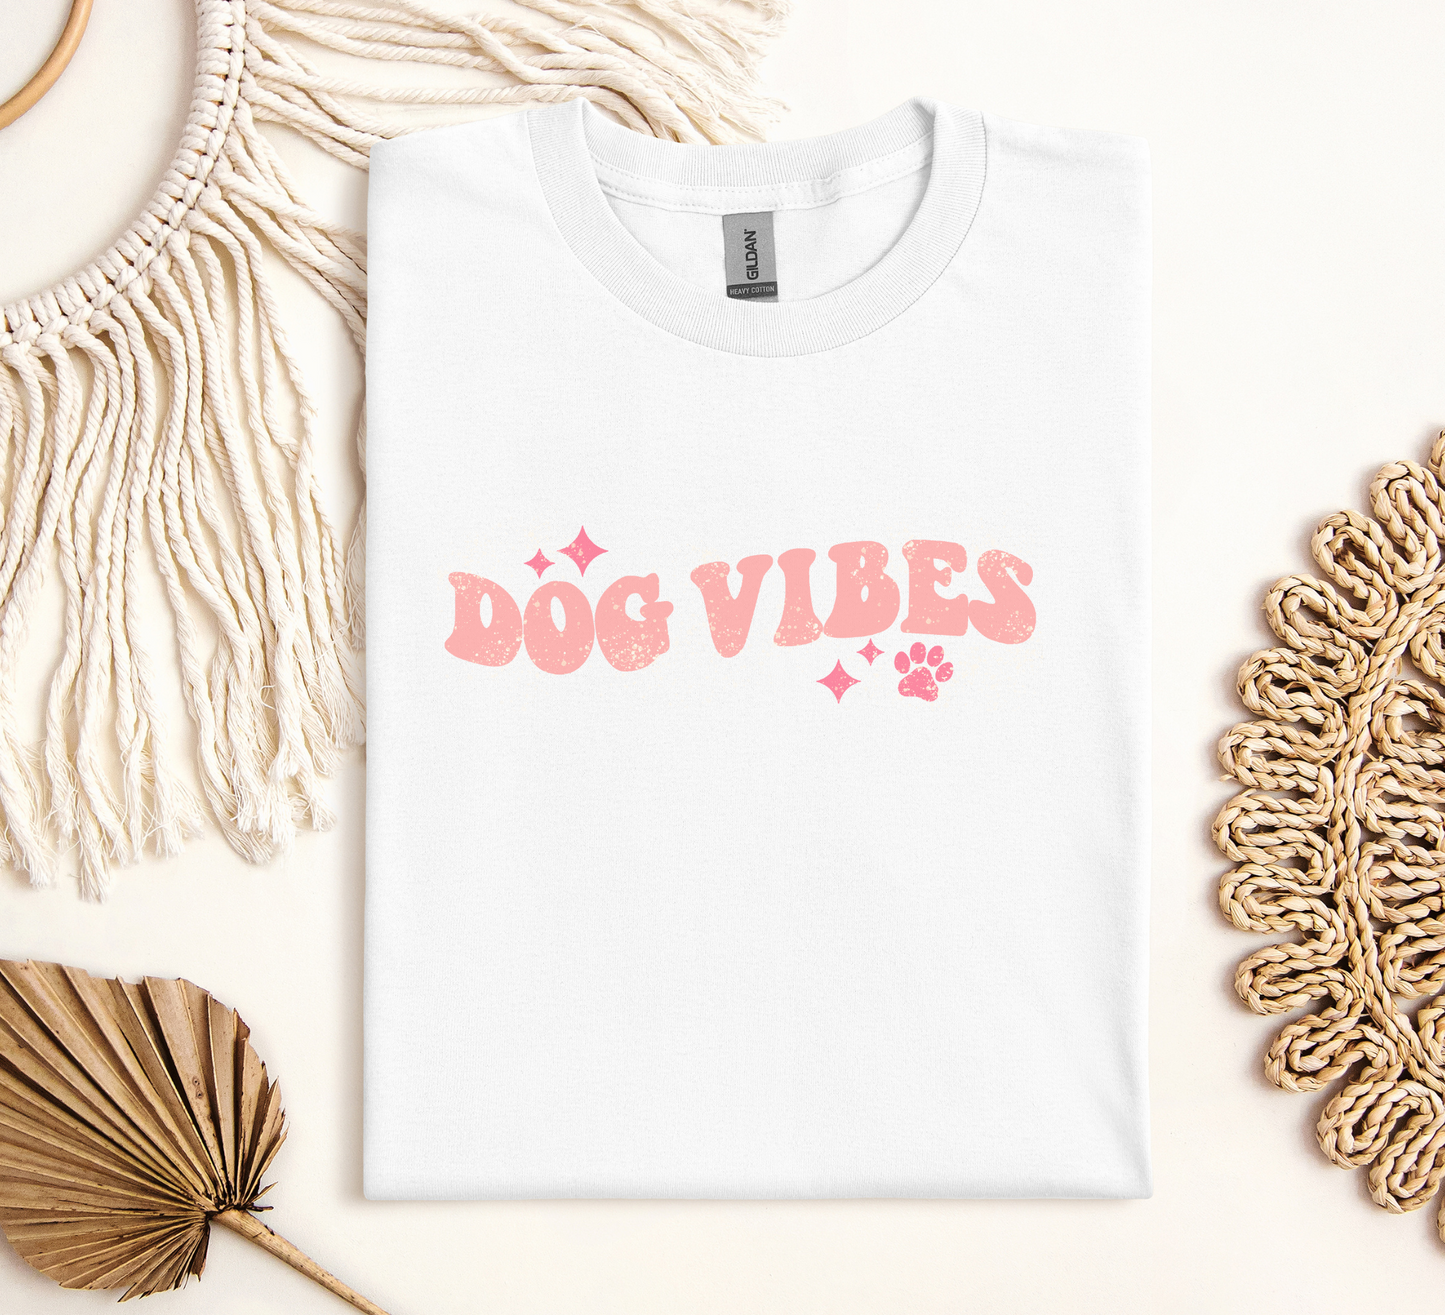 Dog Vibes Crewneck T-shirt